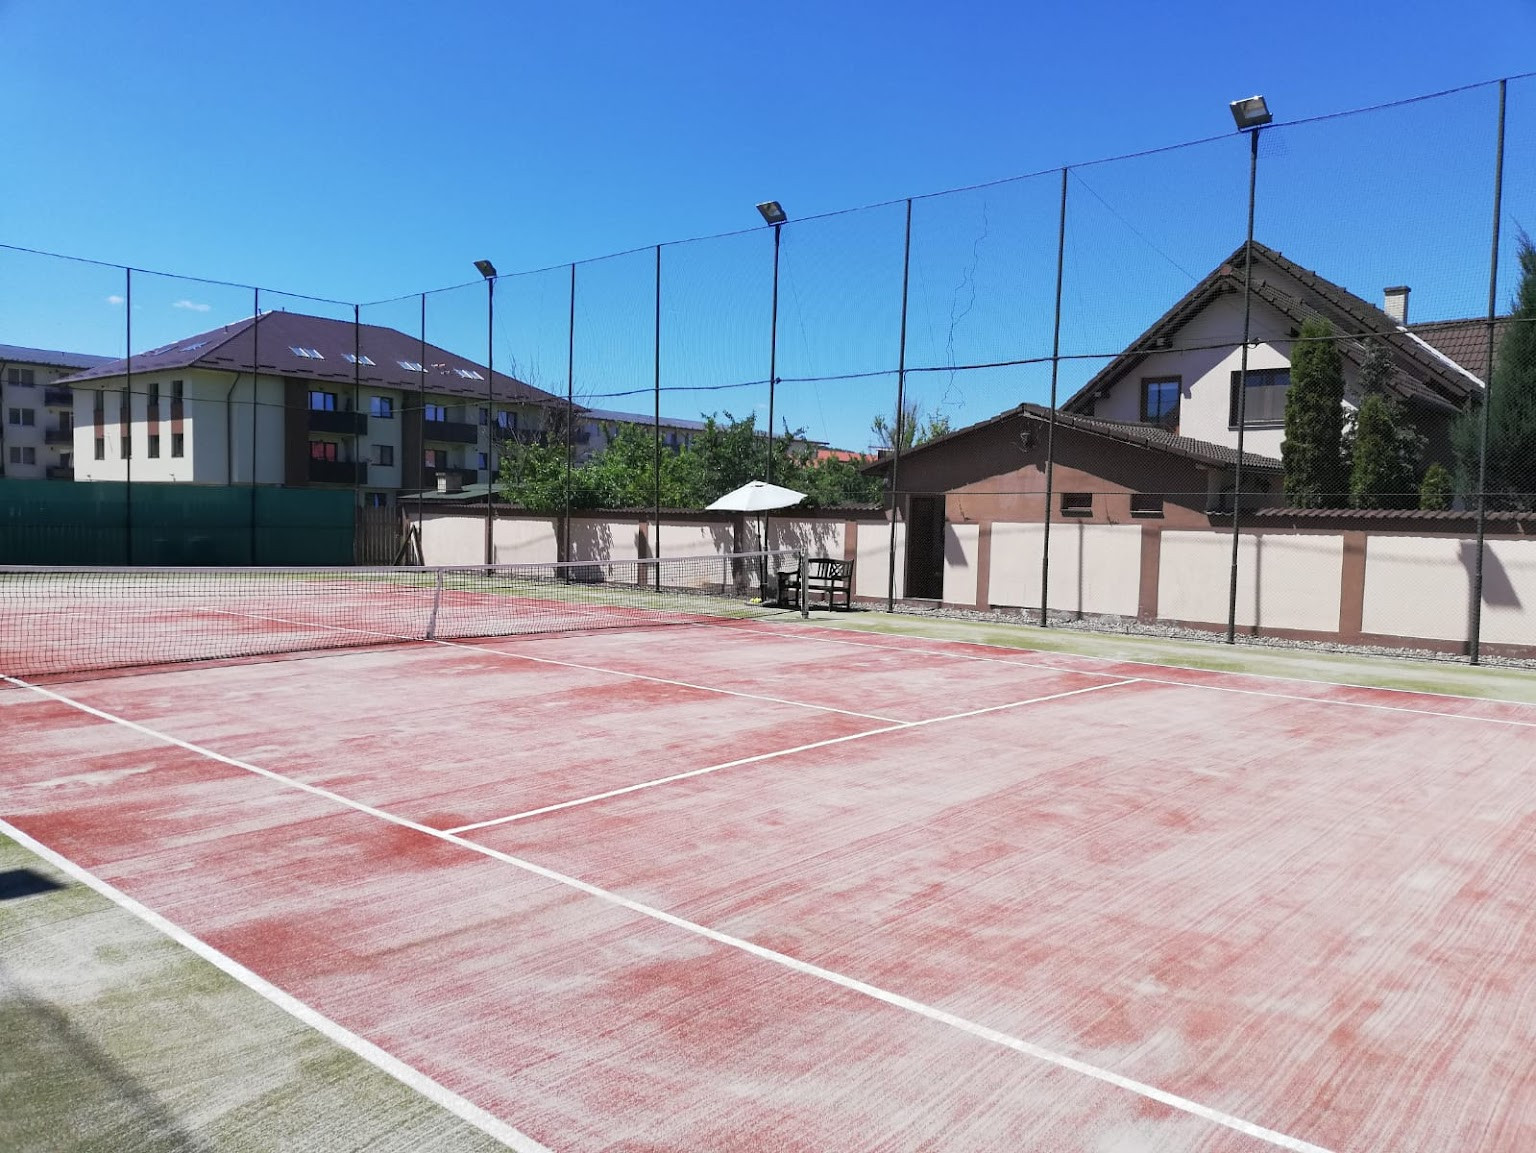 micro compact overhead Cluburi și terenuri de tenis în apropiere de mine în Cluj - Nicelocal.ro